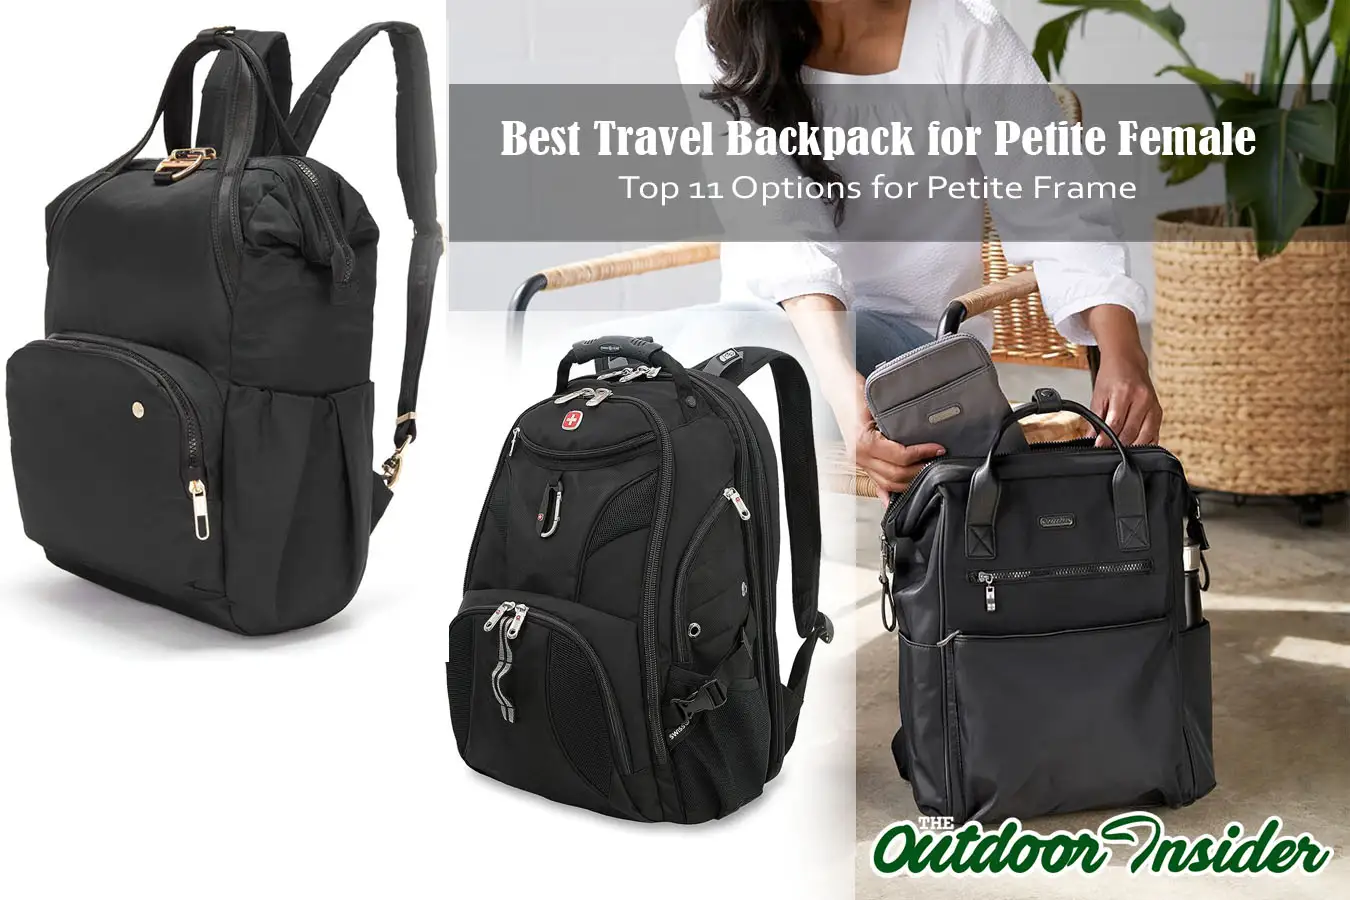 Best Travel Backpack for Petite Female